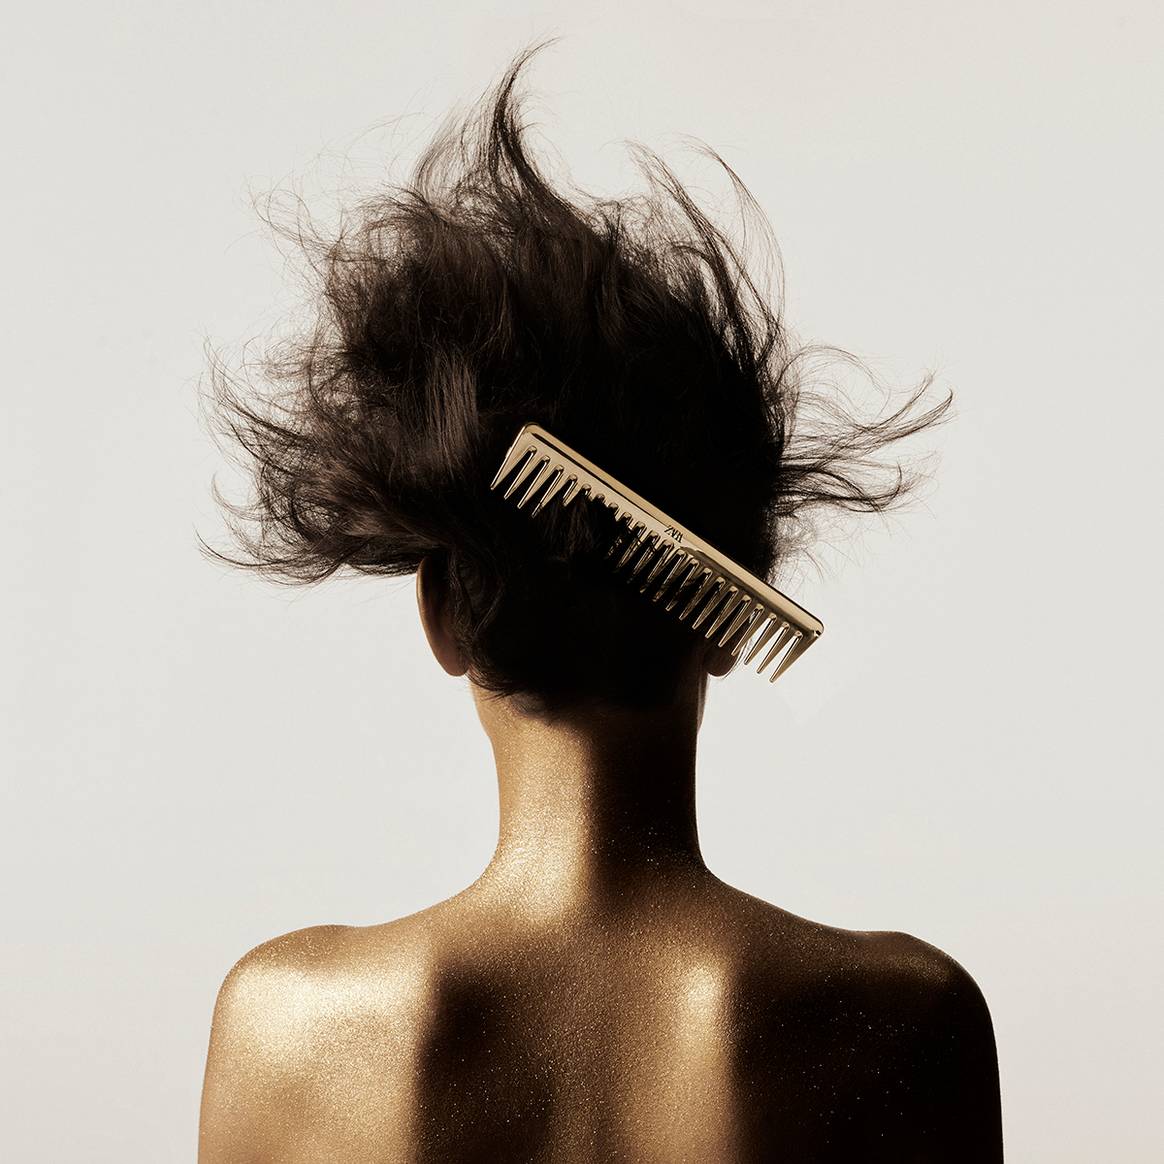 Colección cápsula “Glitter in Gold” de la nueva línea “Zara Hair” de “Zara Beauty”, desarrollada junto al estilista Guido Palau. Fotografía de campaña.